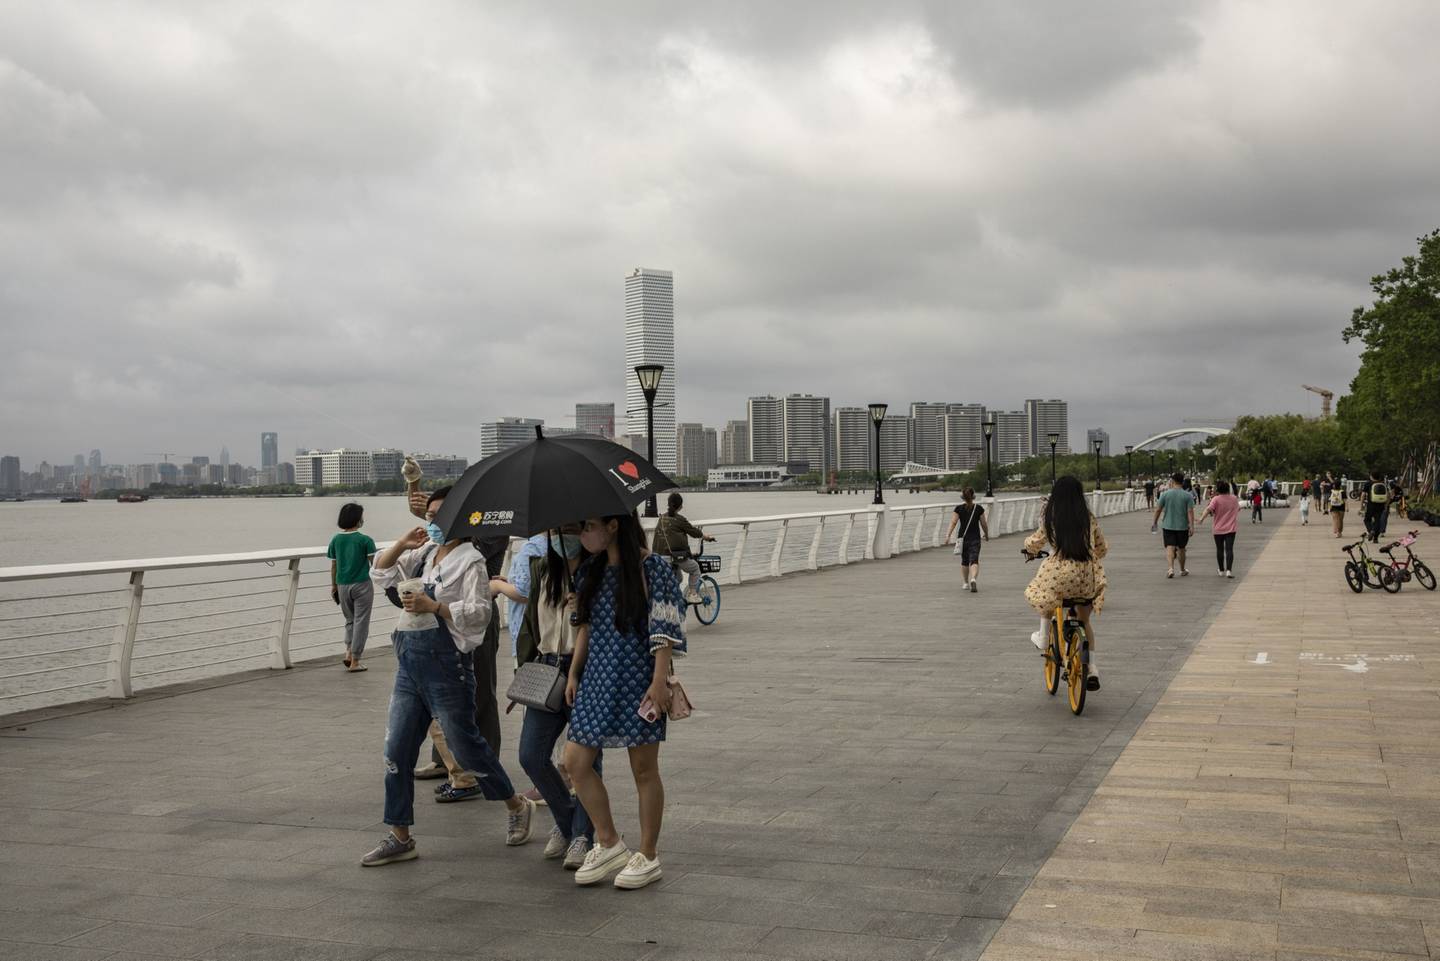 Imagen de Shanghái a medida que se relajan las restricciones por el Covid-19 en China